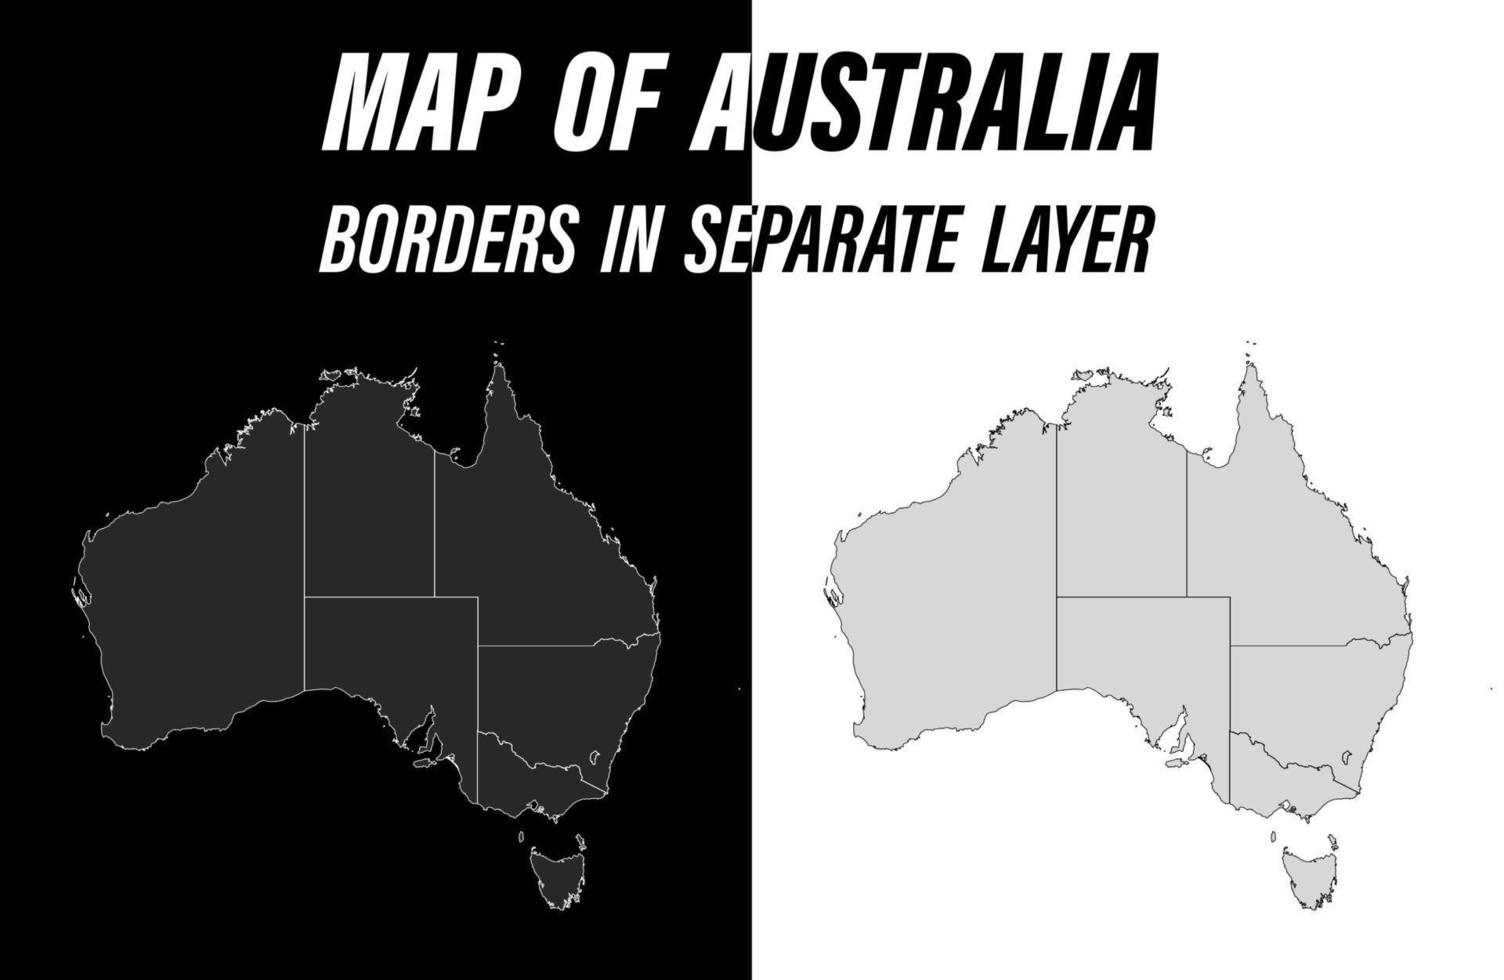 Detaillierte Karte von Australien mit Grenzen. pädagogisches Gestaltungselement. leicht bearbeitbarer Schwarz-Weiß-Vektor vektor